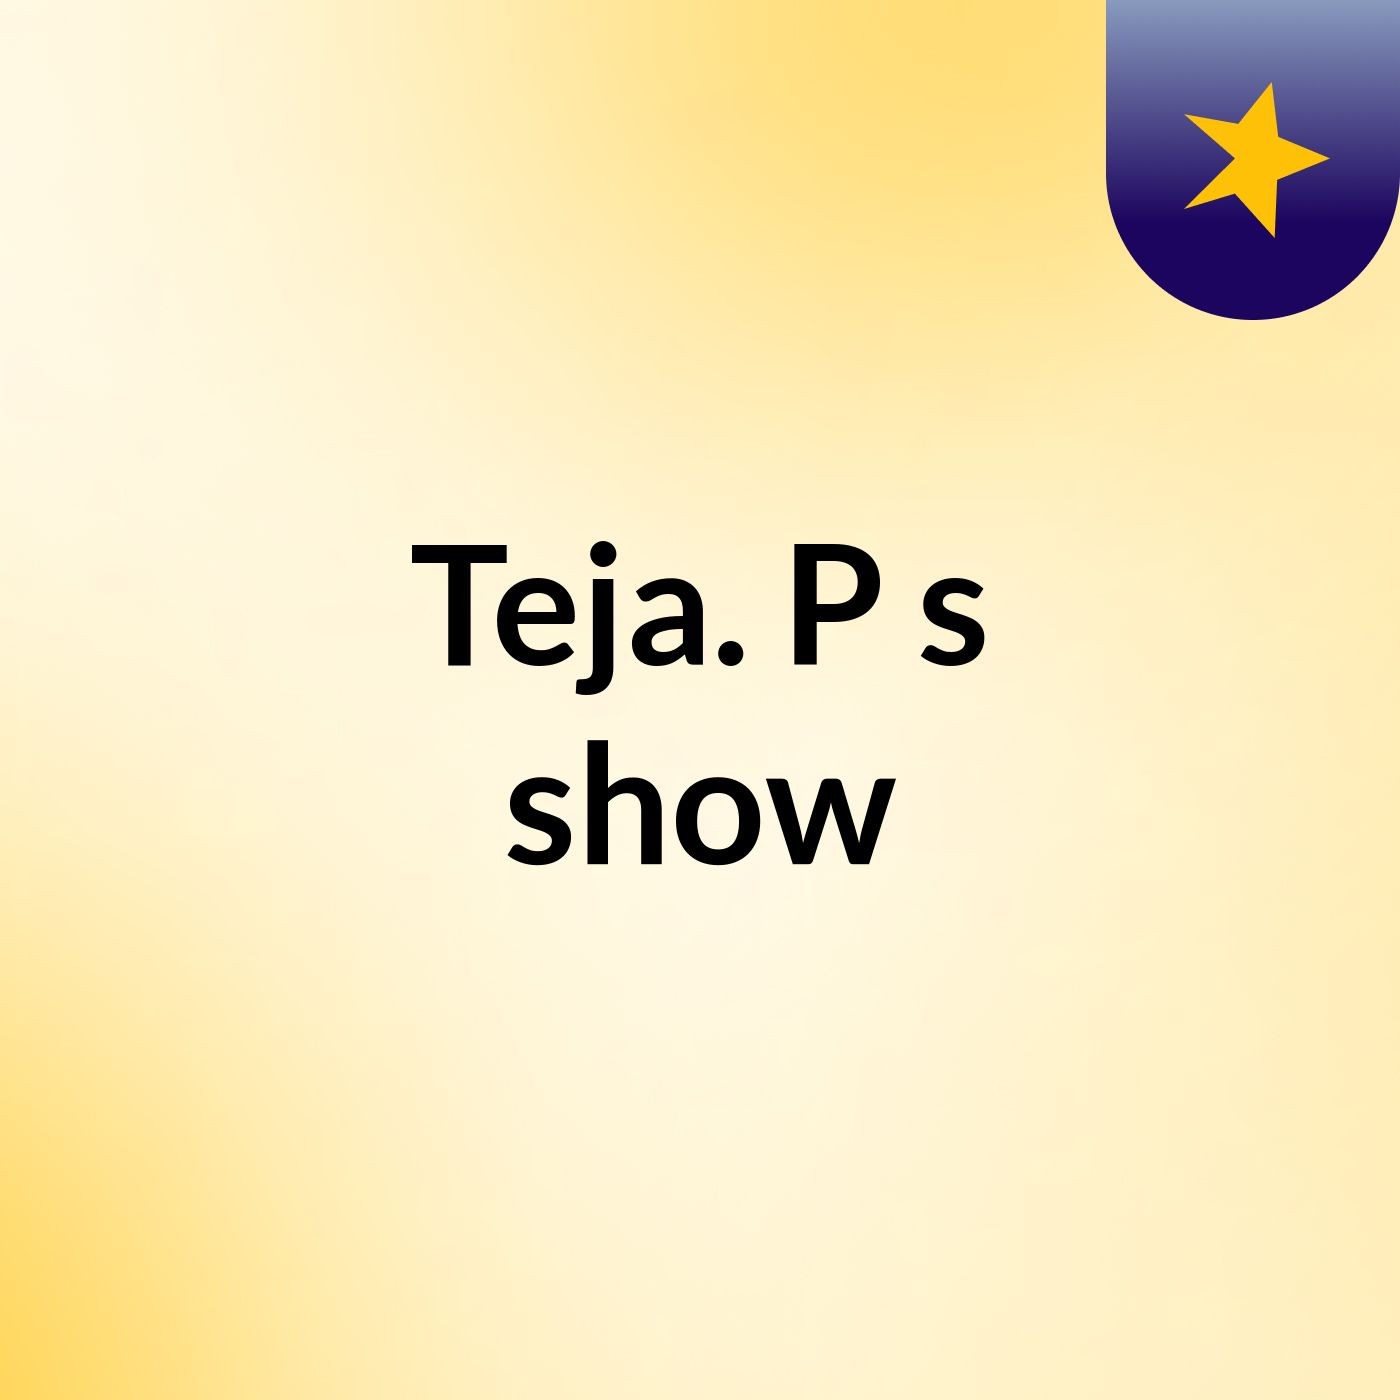 Teja. P's show